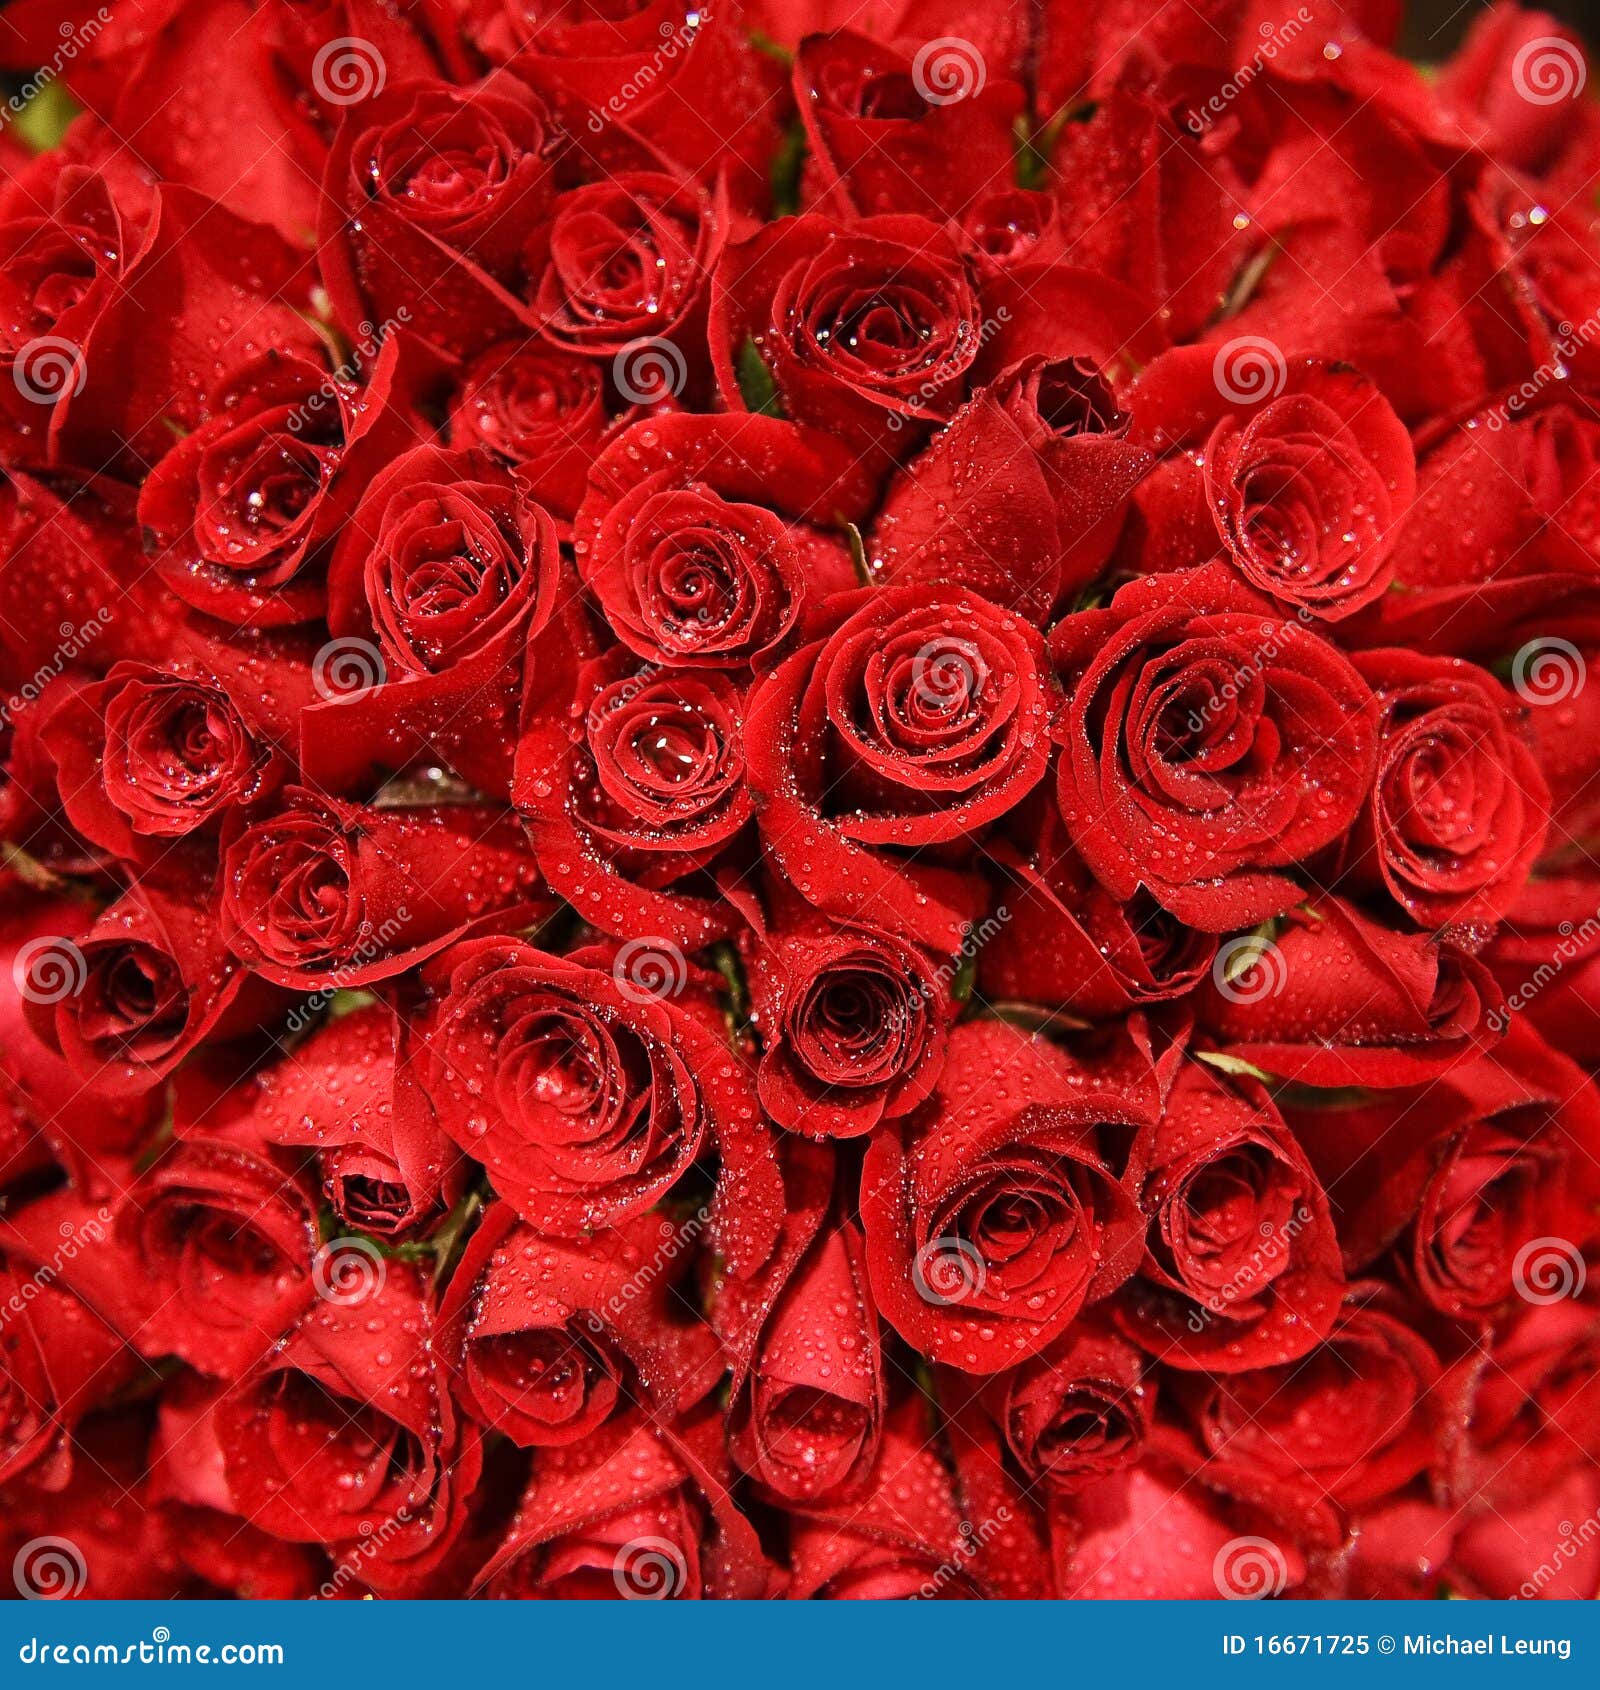 red rose bundle 16671725